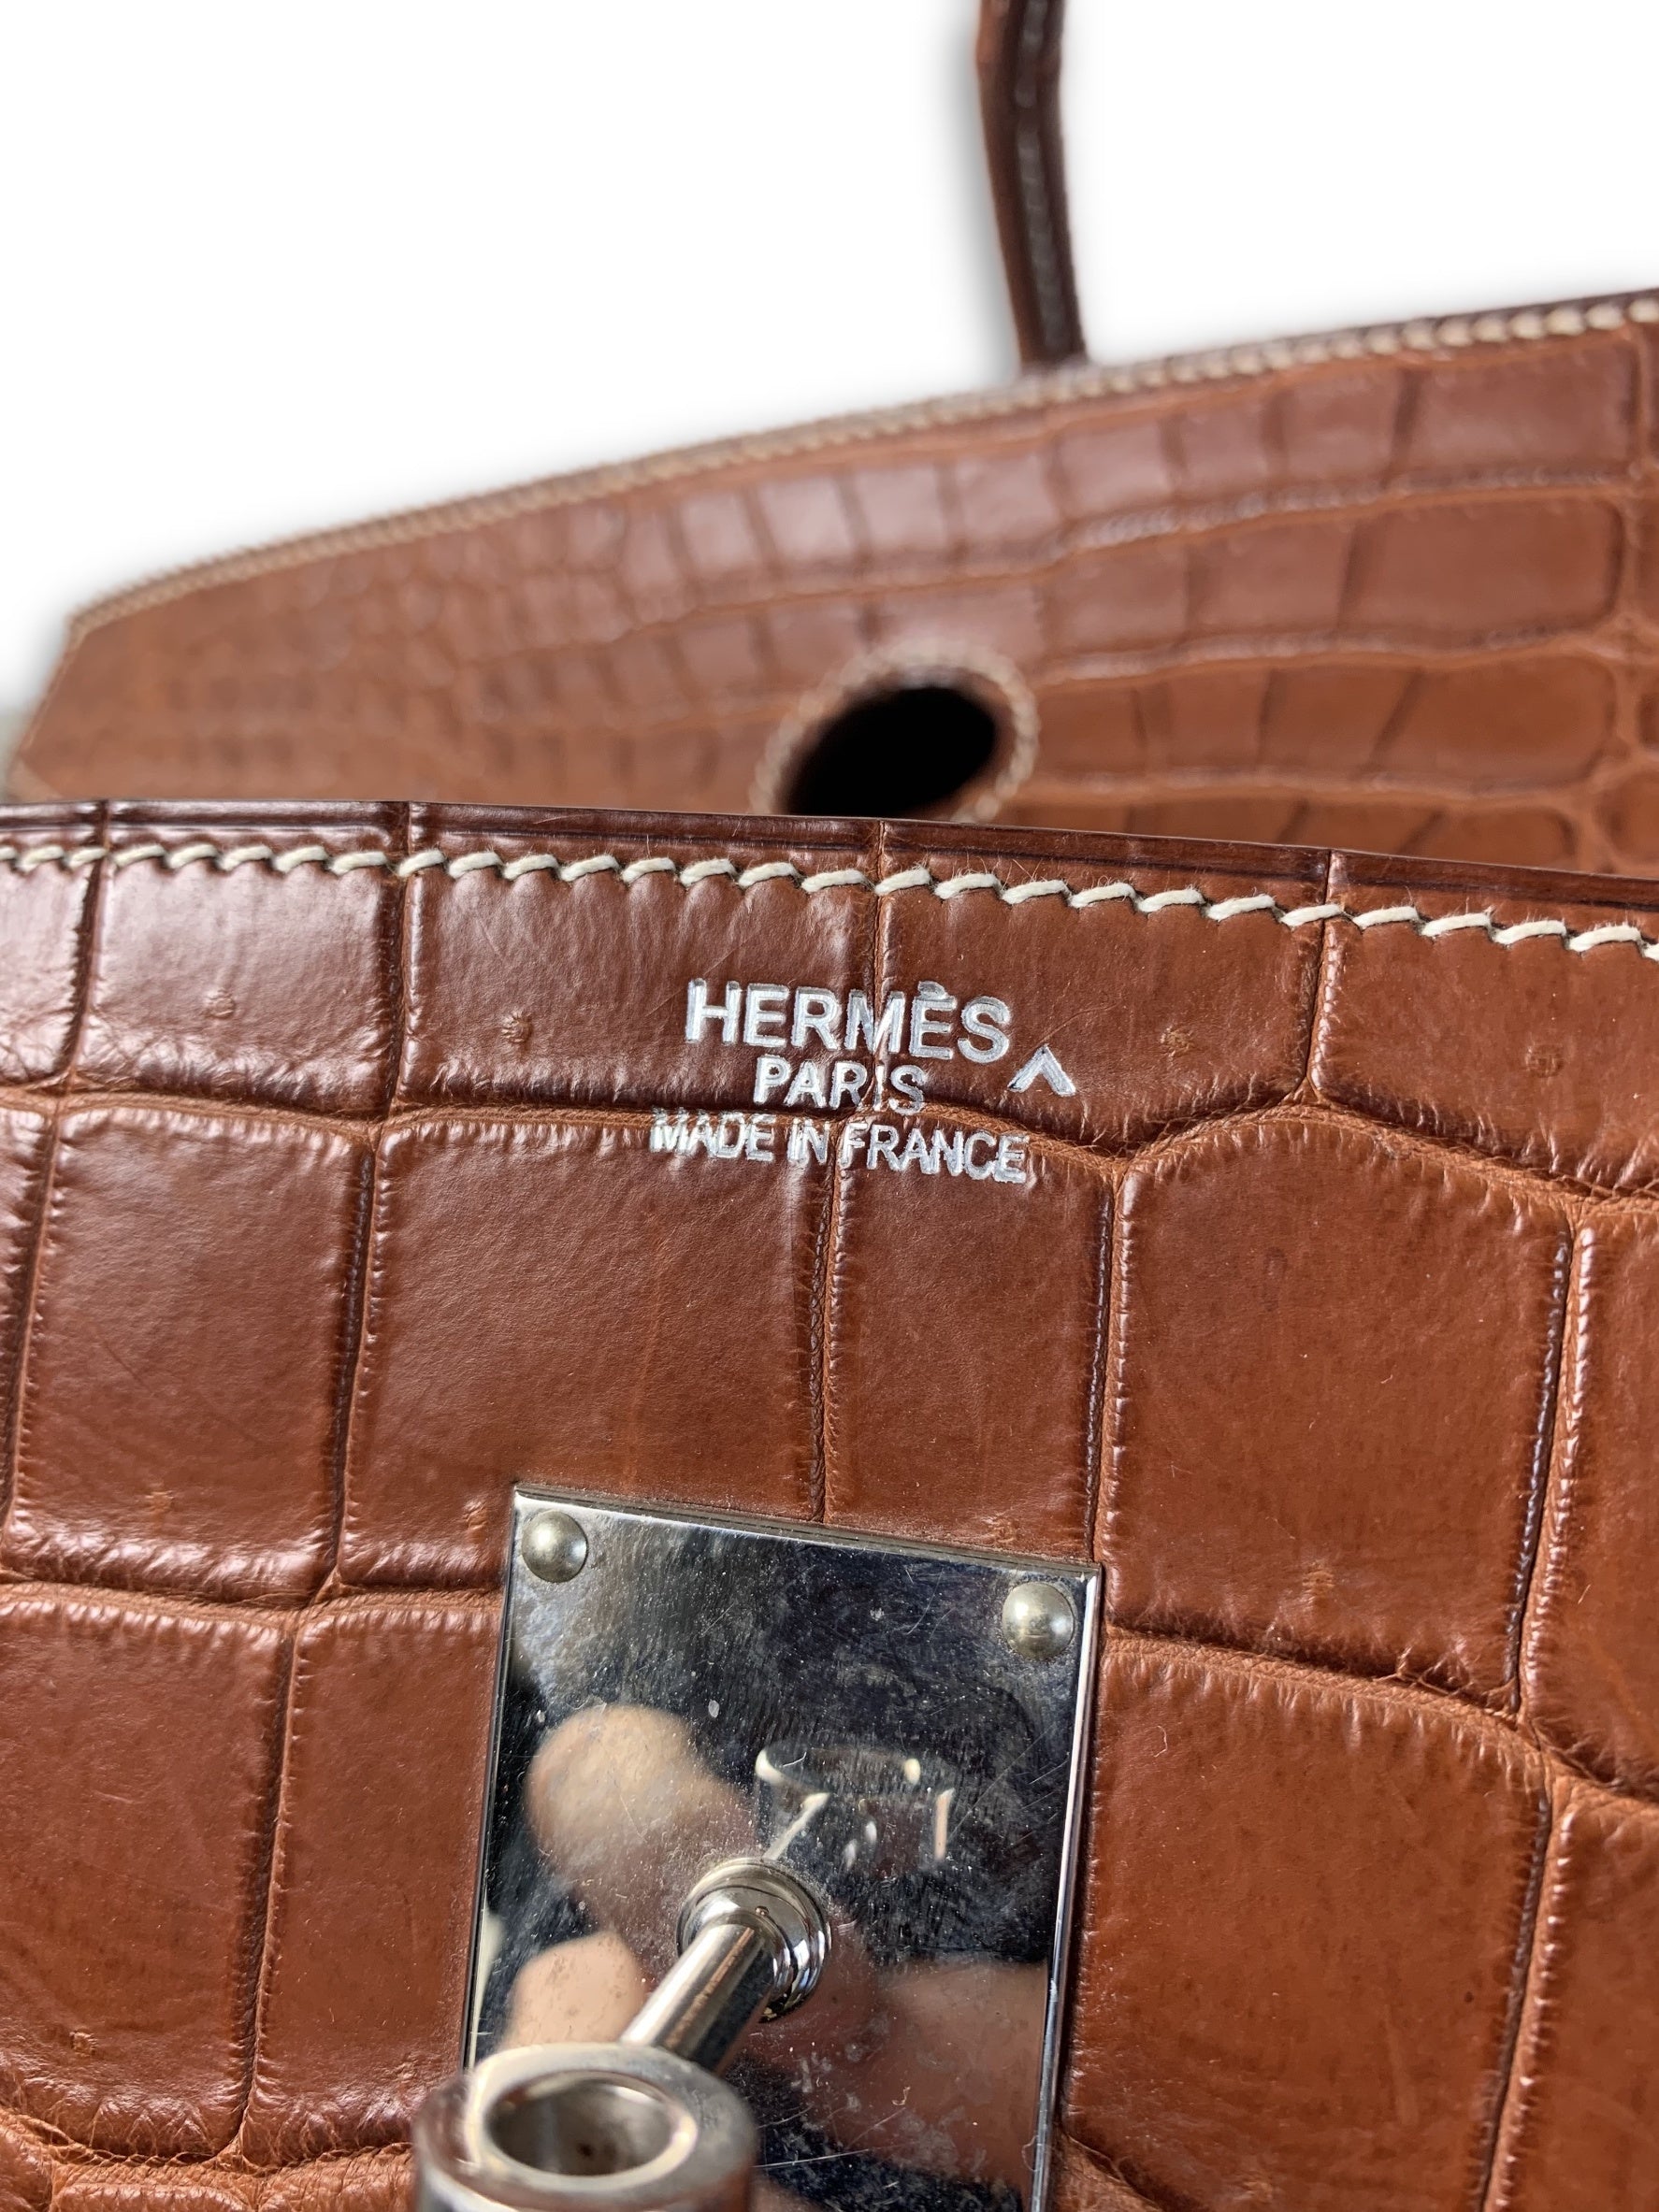 HERMES Birkin 50 HAC in Etoupe Grained Leather